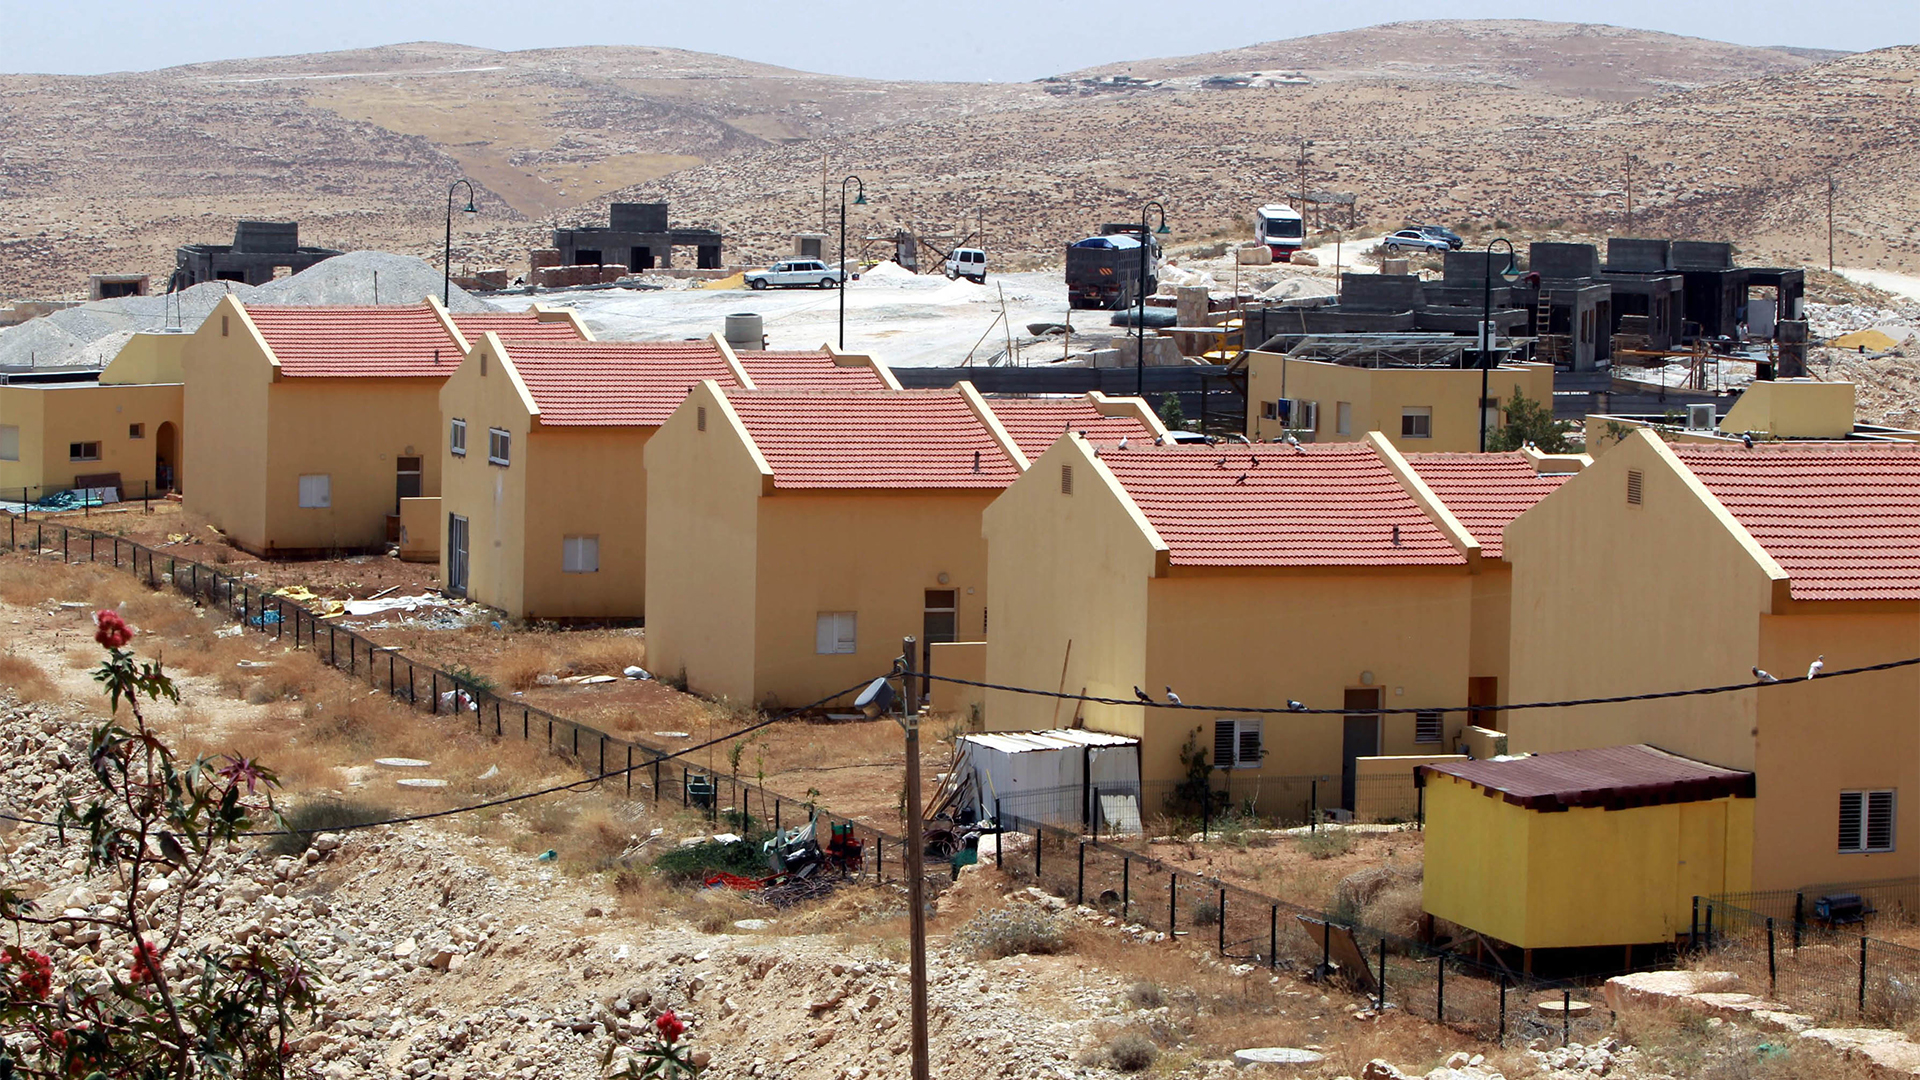 Die israelische Siedlung Al-Karmel südlich von Hebron im Westjordanland | picture alliance / dpa